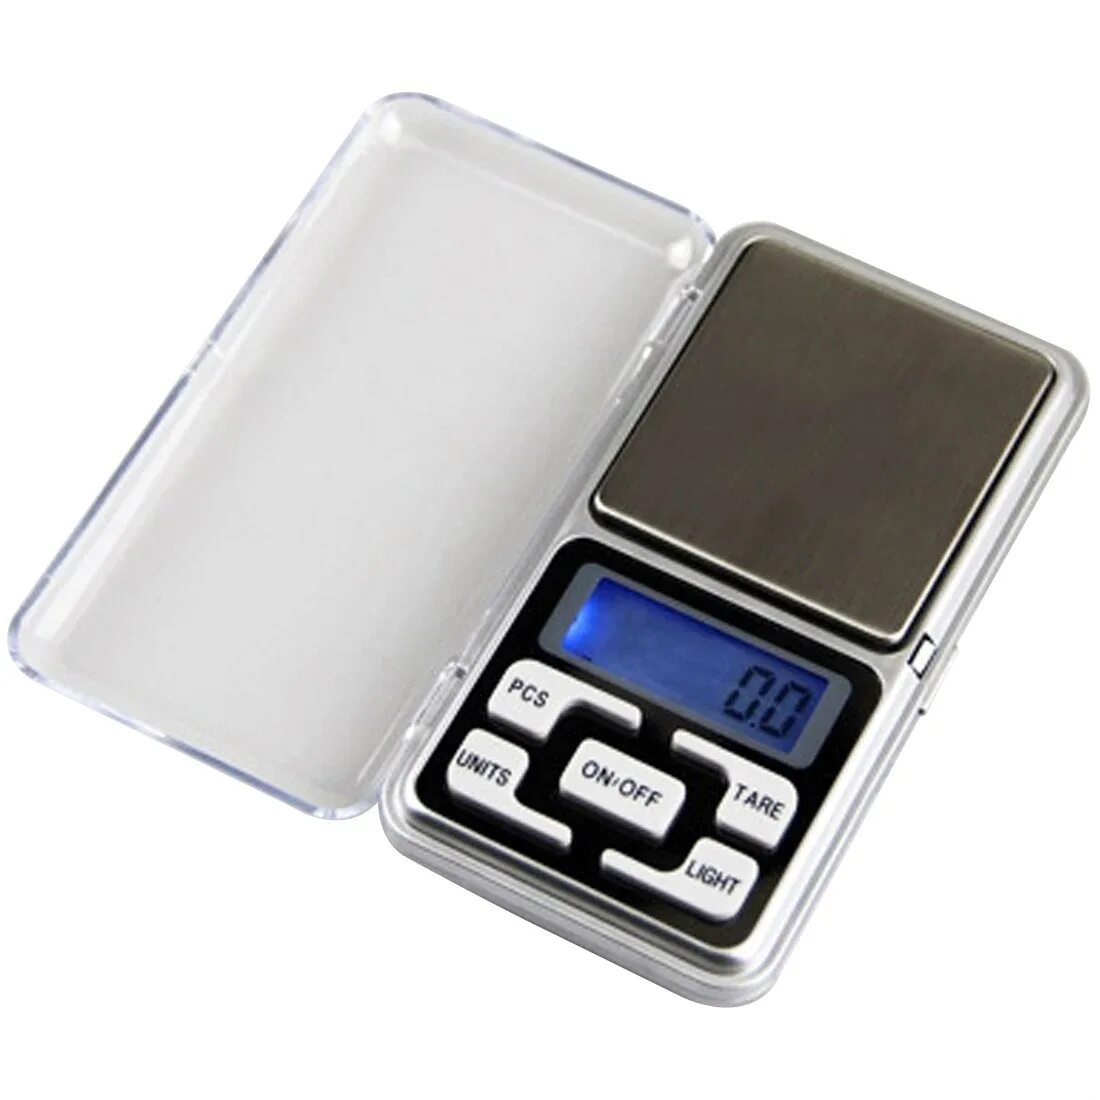 Весы портативные электронные. Весы Digital Scale 500g/0.01g. Ювелирные весы MH-Series 500 / Pocket Scale / карманные весы /. Весы ювелирные MG-100 (0.01G-100g). Весы электронные Pocket Scale MN-200.